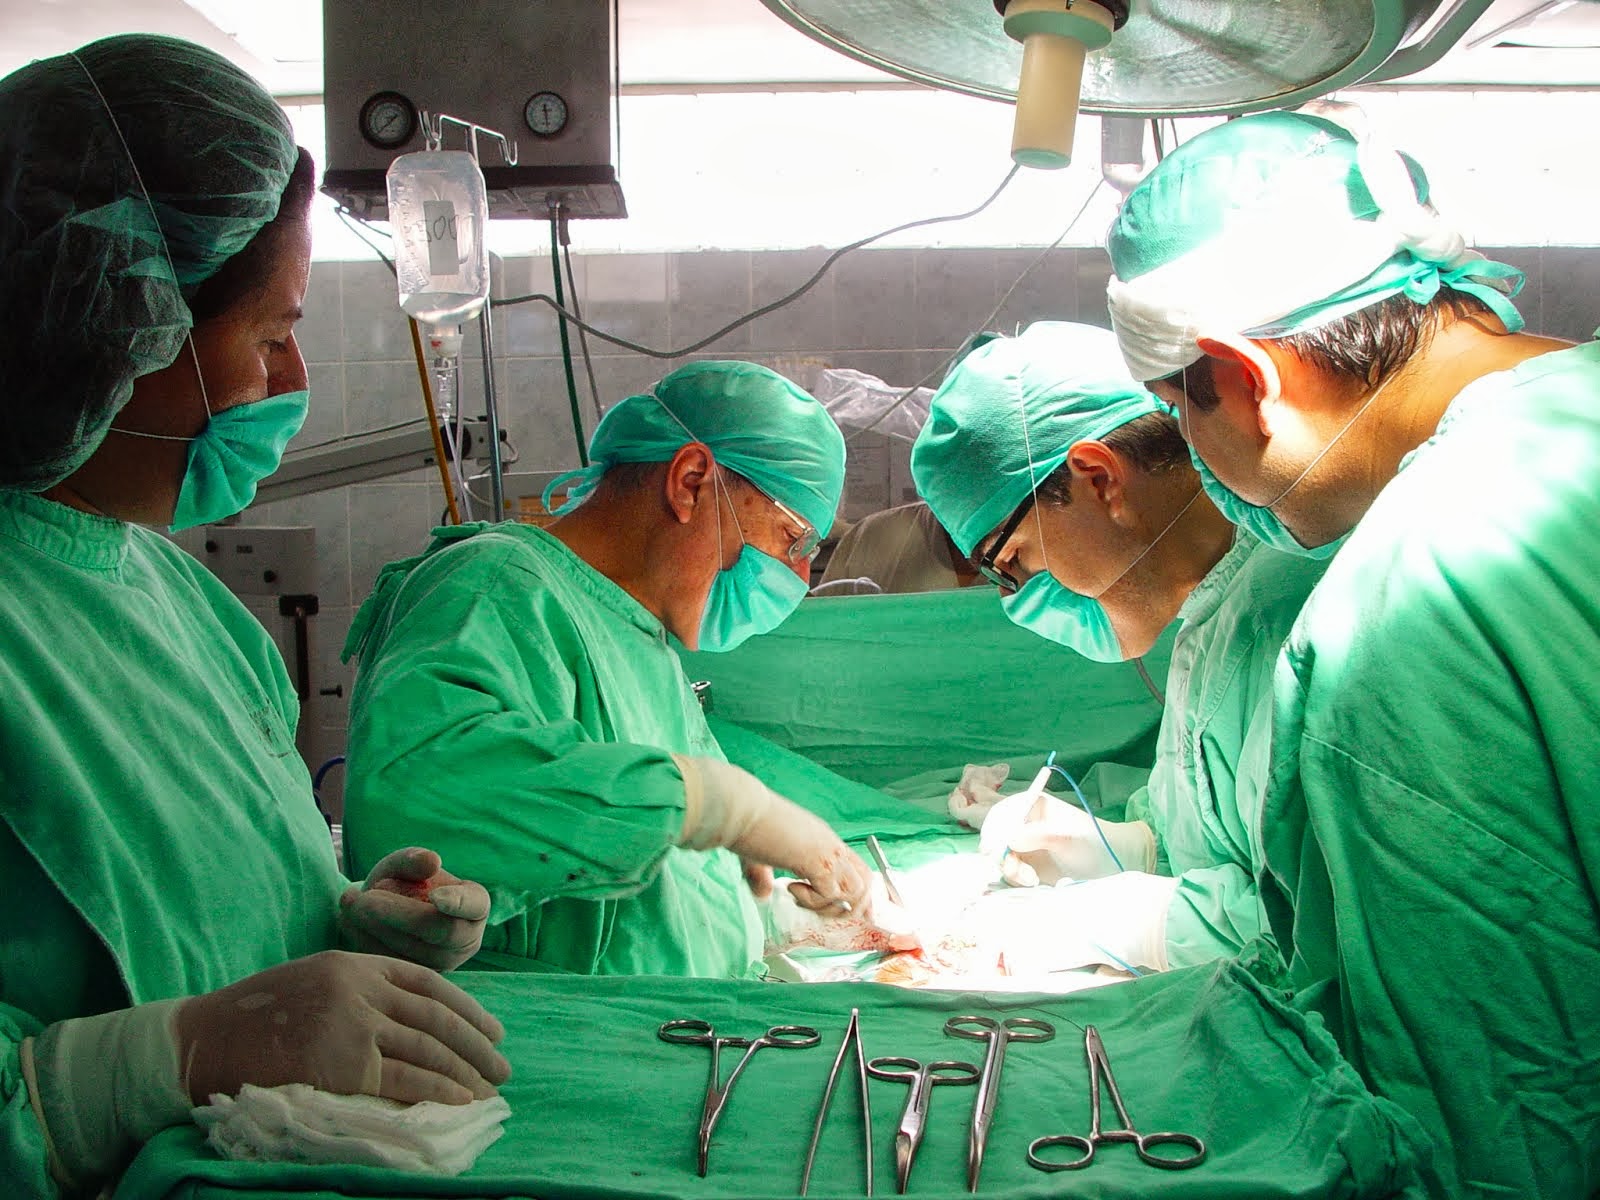  En México, más de 20 mil personas esperan un trasplante de órgano